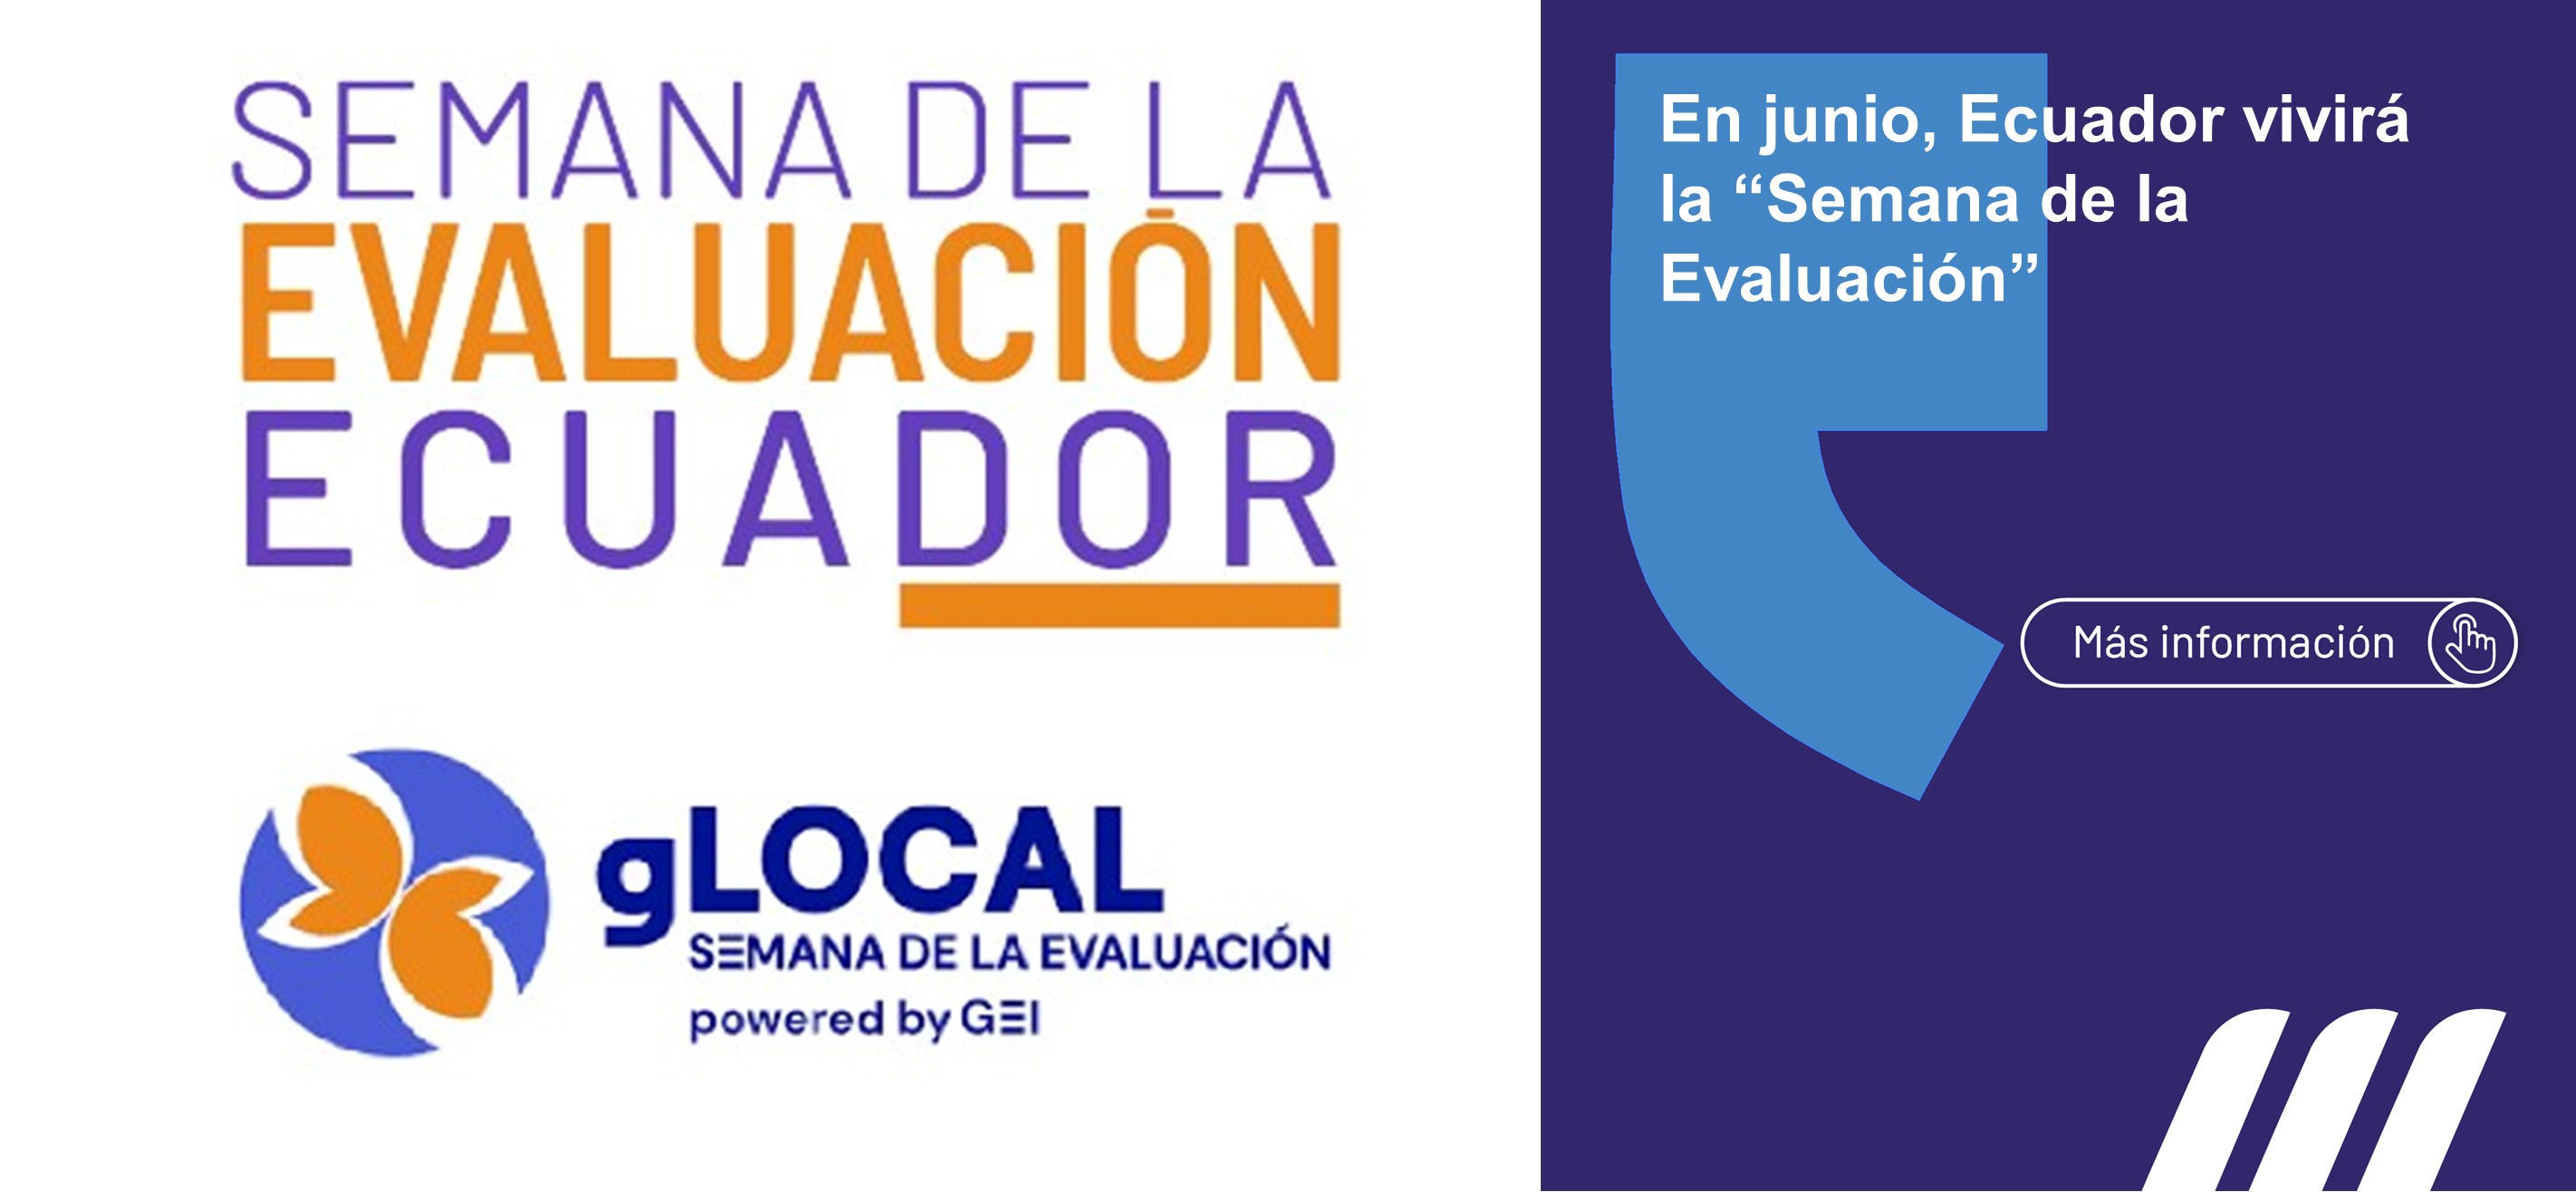 Del 03 al 07 de junio se realizará la Semana de la Evaluación Ecuador, con el fin intercambiar conocimientos y experiencias sobre los procesos de evaluación.